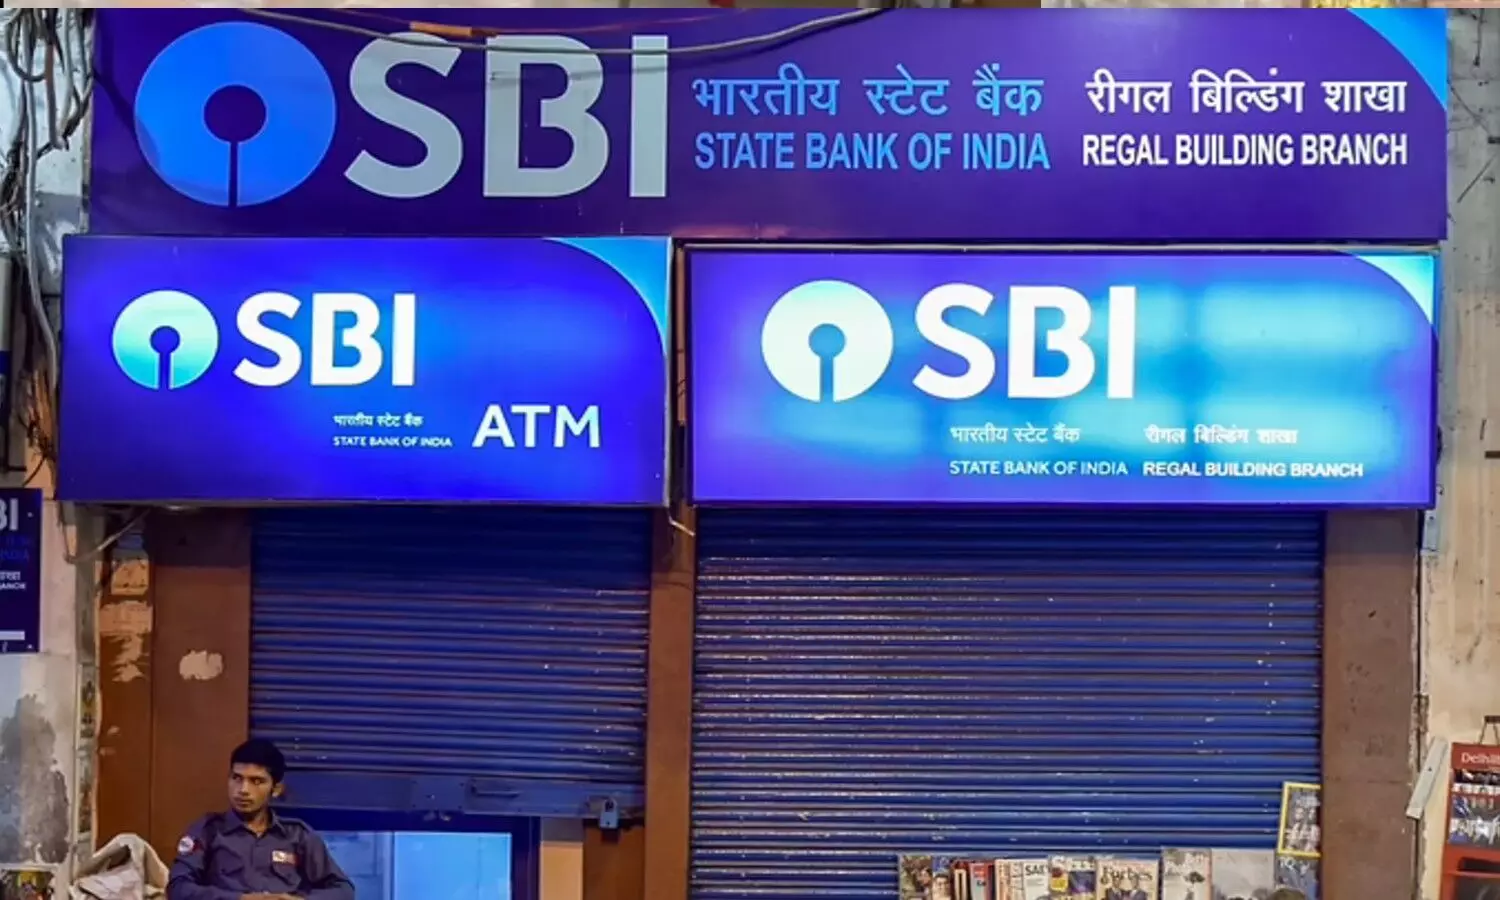 आज यानी शुक्रवार रात को भारतीय स्टेट बैंक(SBI) की डिजिटल बैंकिंग सेवाएं प्रभावित रहने वाली हैं। बैंक के डिजिटल बैंकिंग प्लेटफॉर्म के अपडेशन का प्रस्तावित कार्य है।